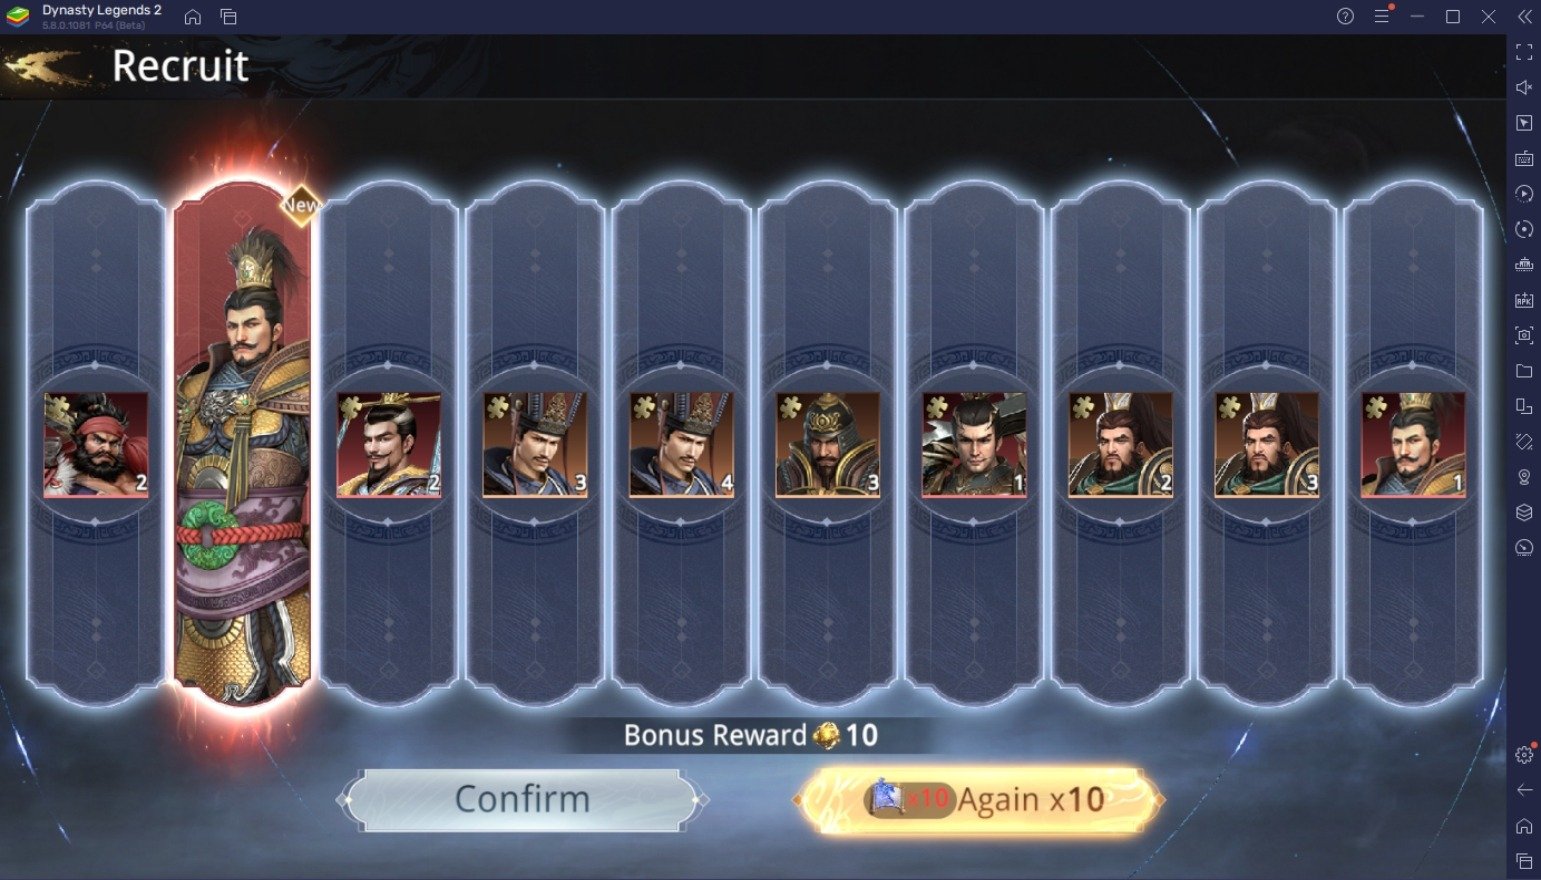 Как увеличить боевой рейтинг персонажей и аккаунта в игре Dynasty Legends 2?